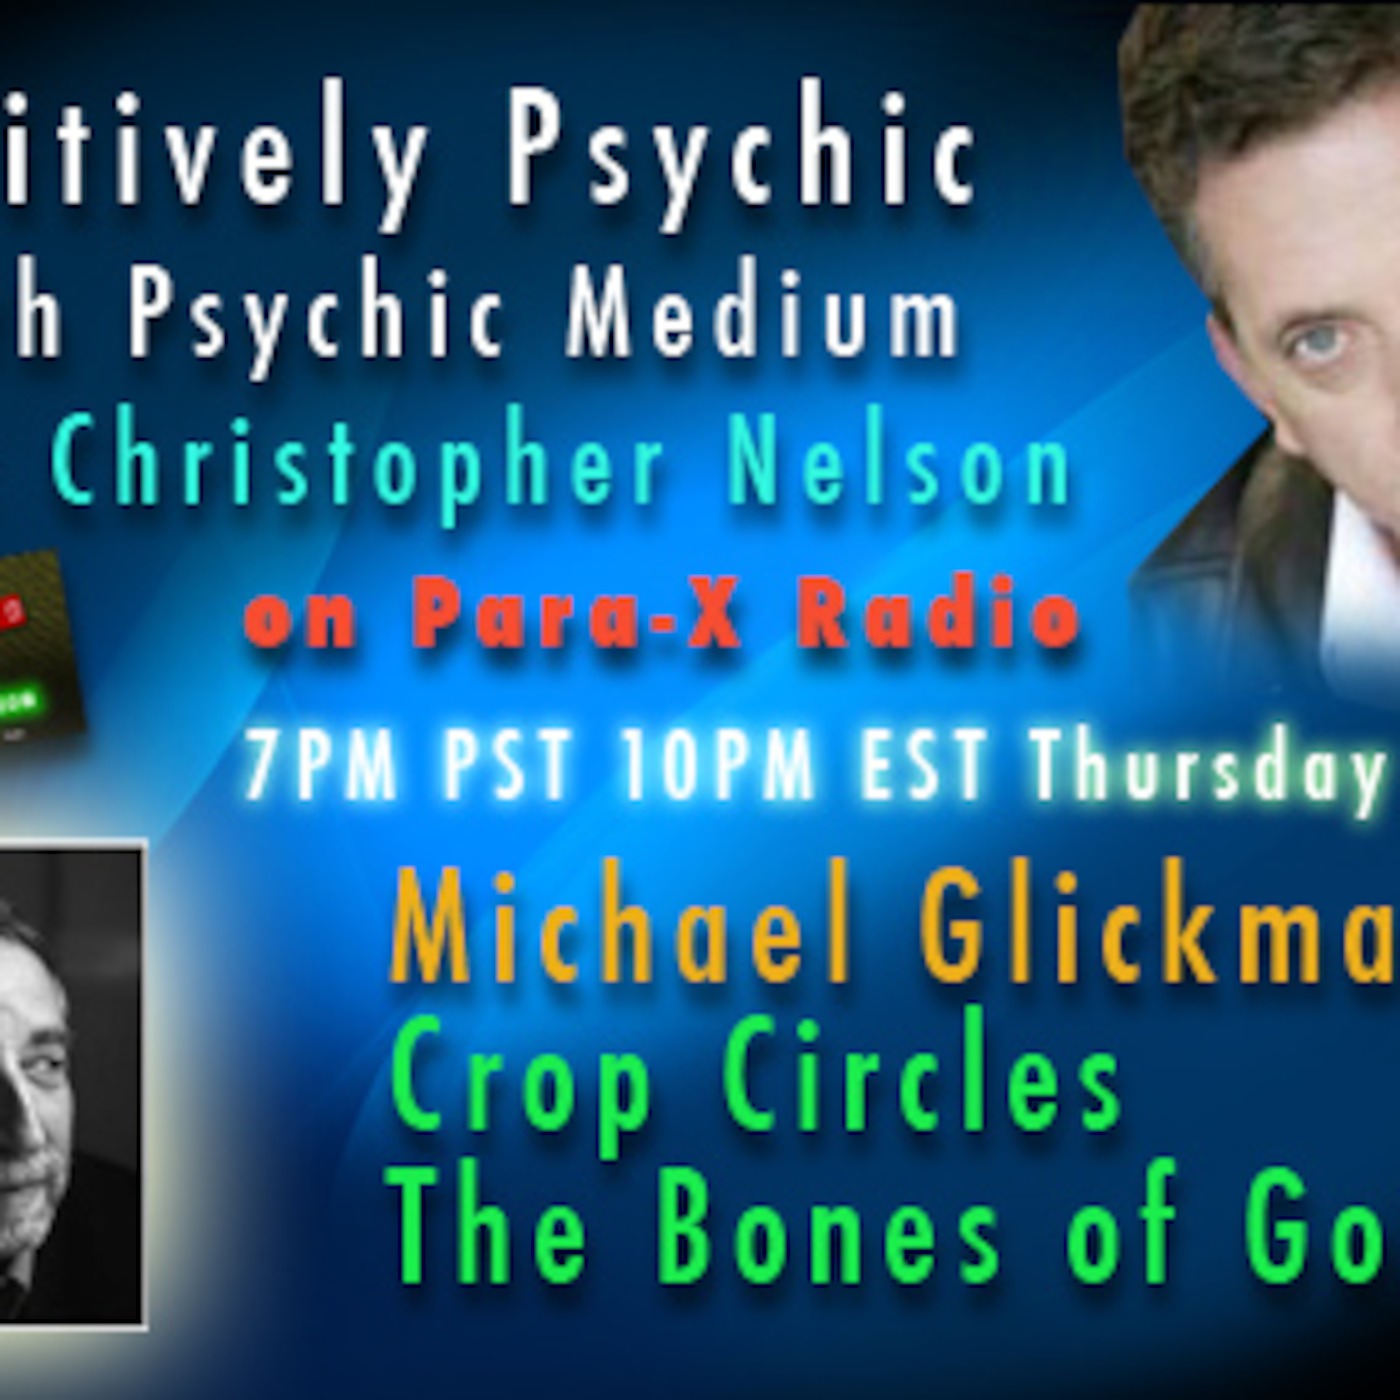 Episode 65 Michael Glickman Crop Circles Bones of Gods